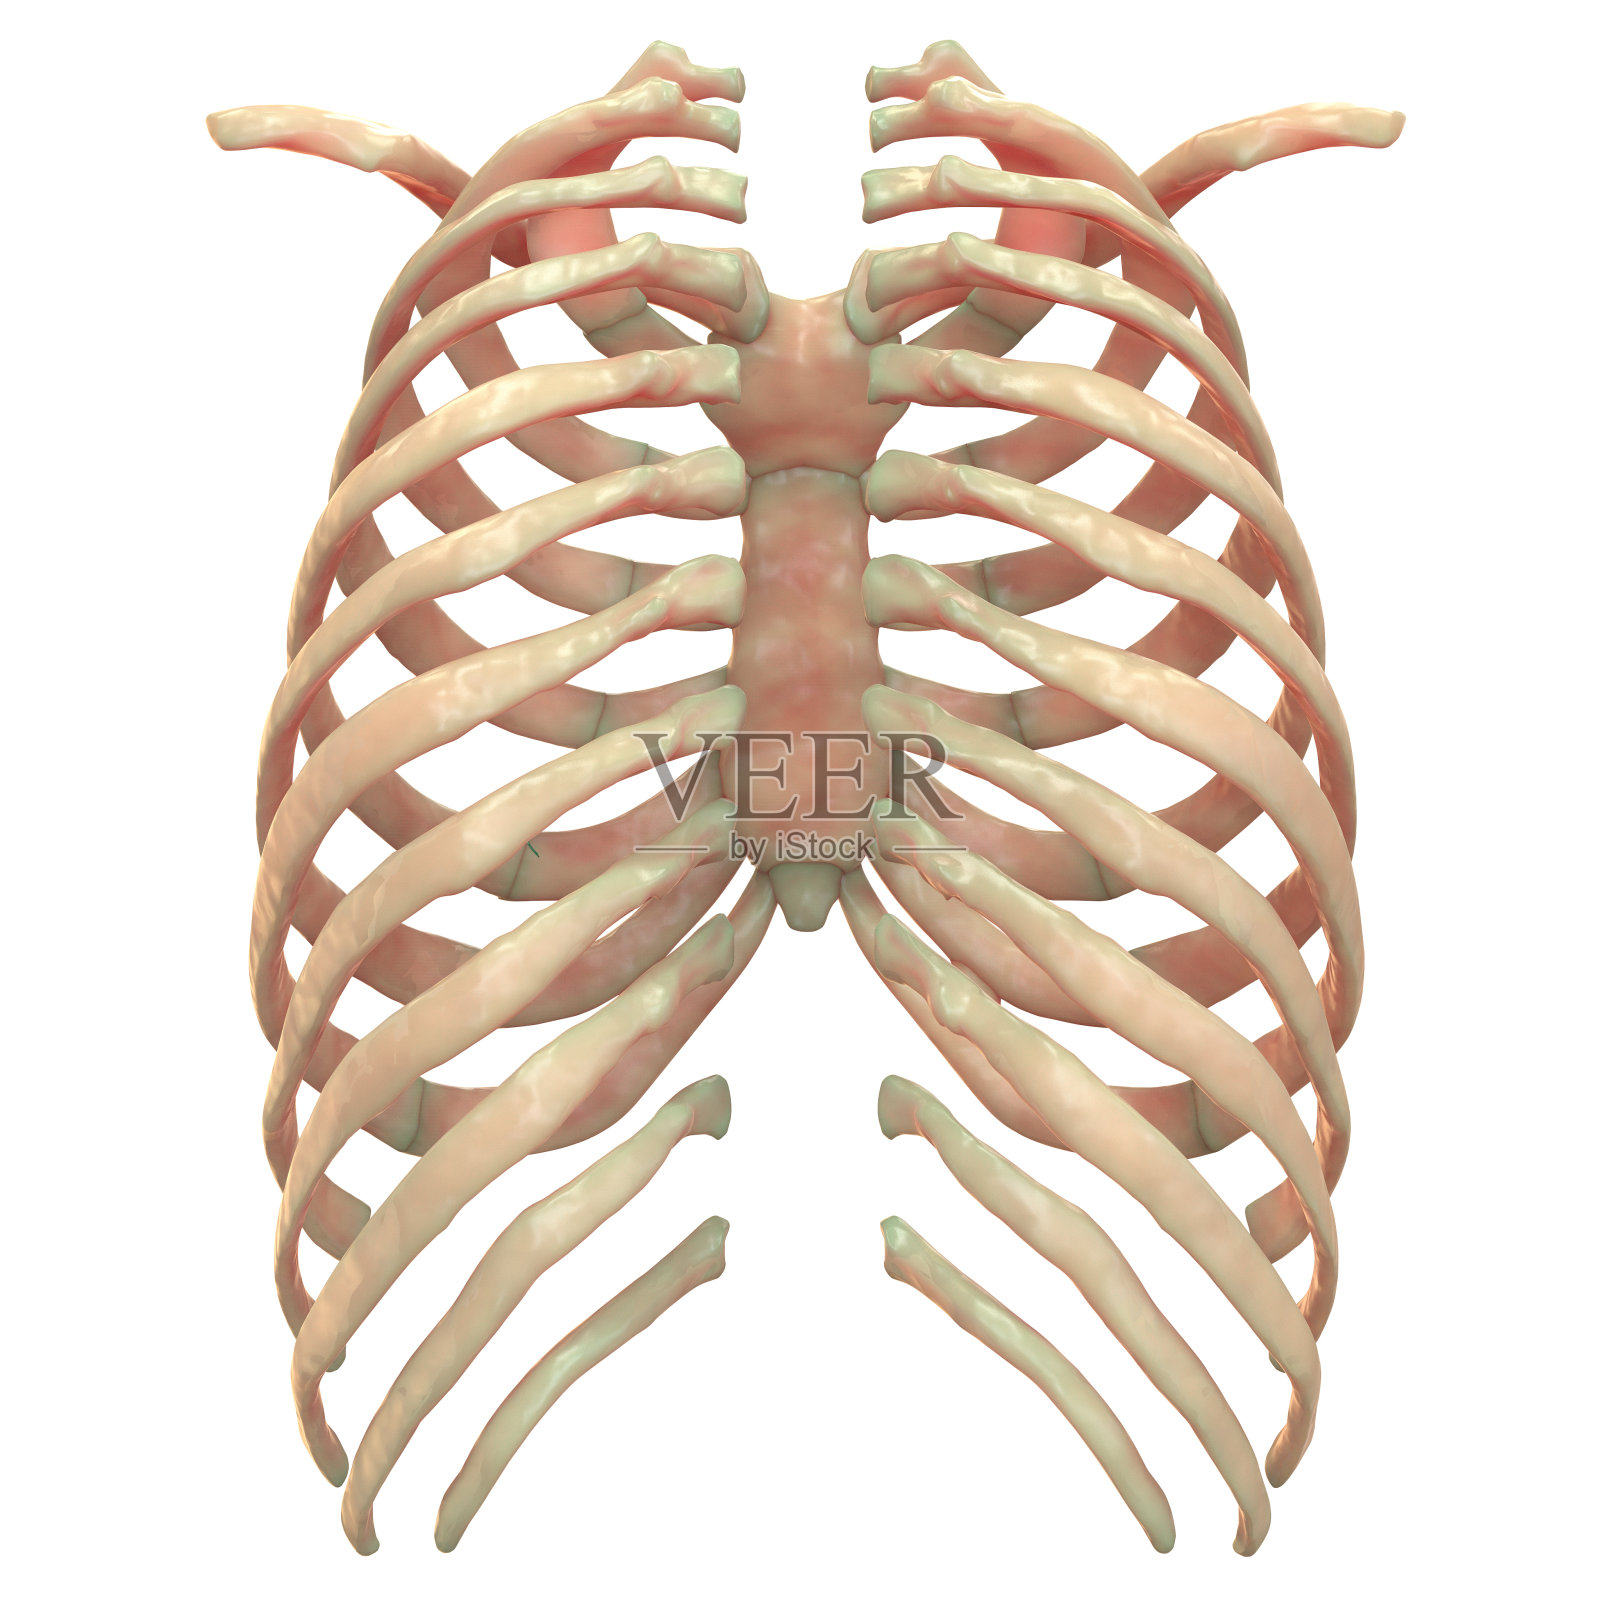 人体骨骼系统肋骨解剖学(后视图)设计元素图片